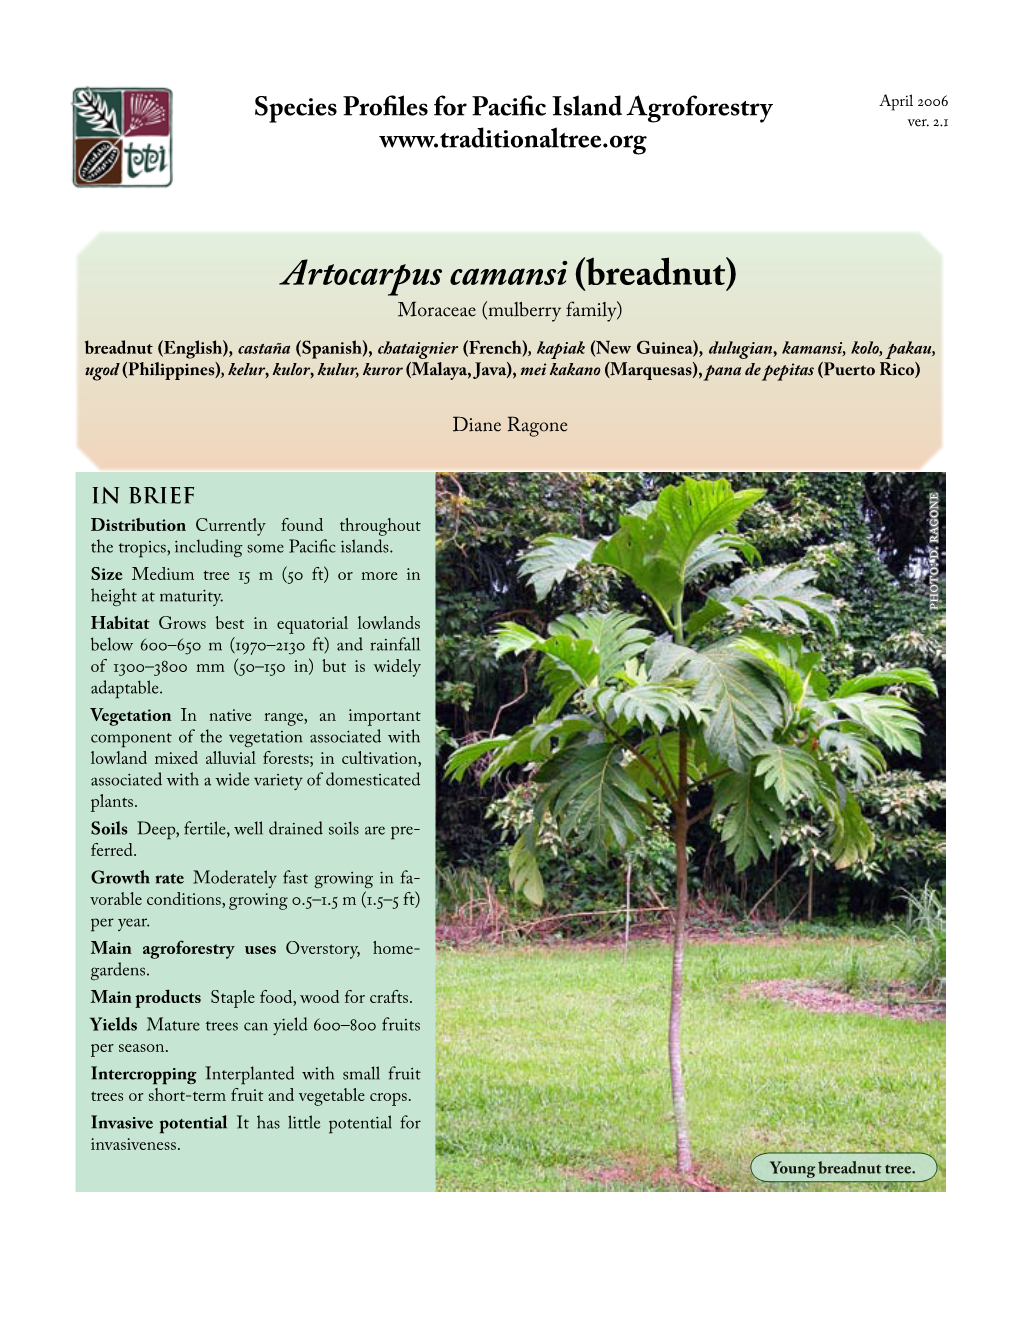 Artocarpus Camansi (Breadnut)